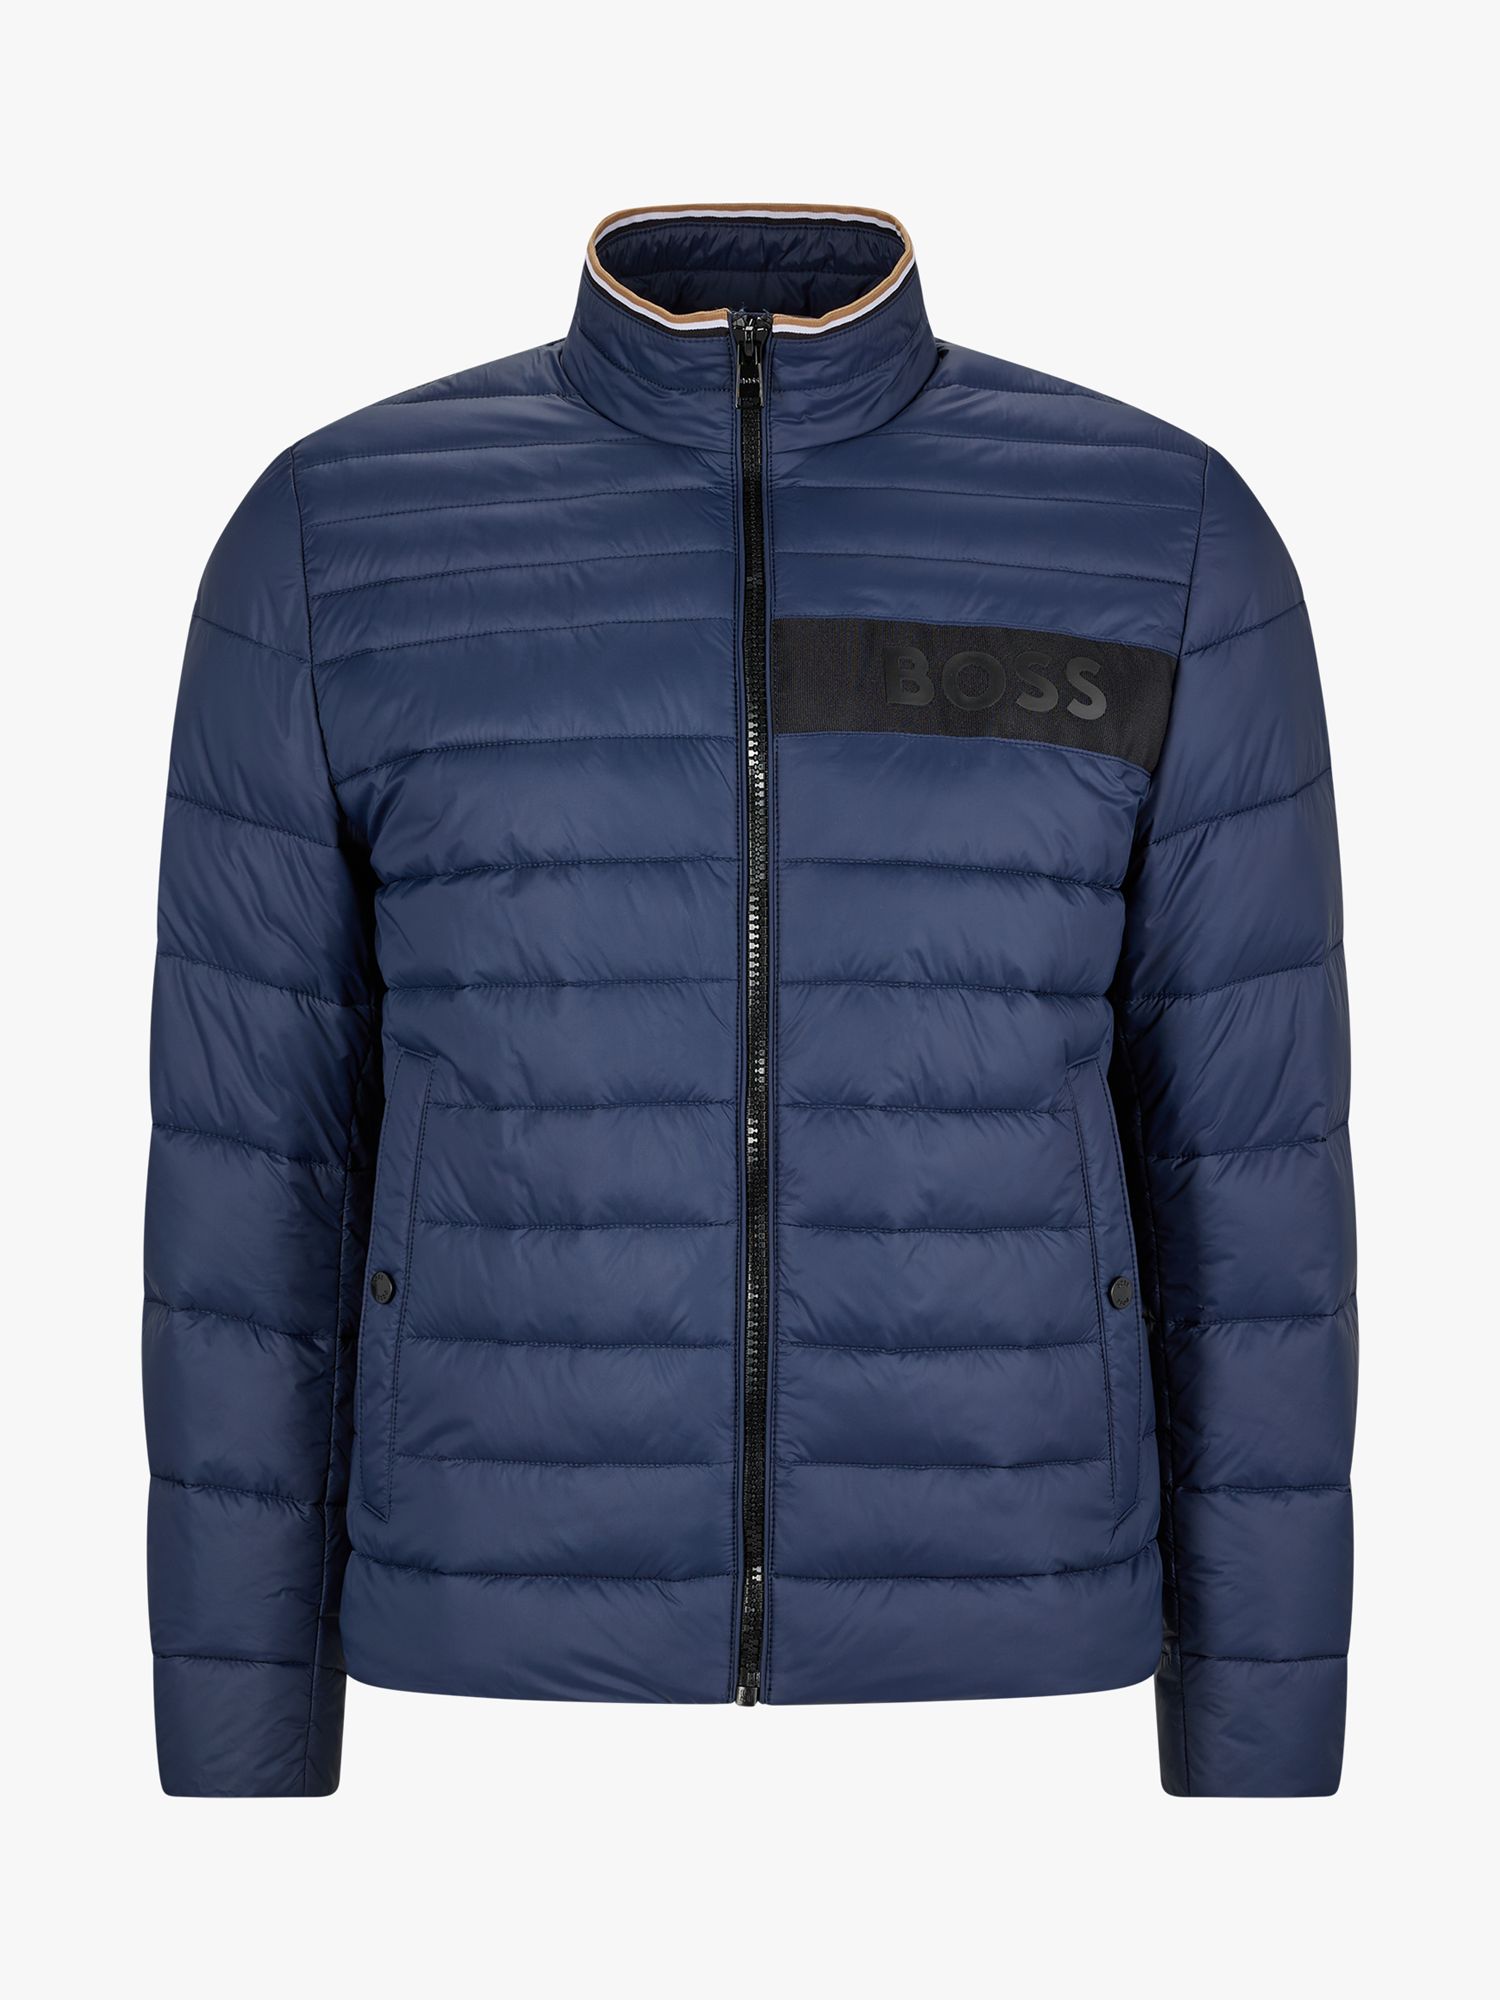 BOSS Darolus Quilted Zip Jacket, Dark Blue, 42R